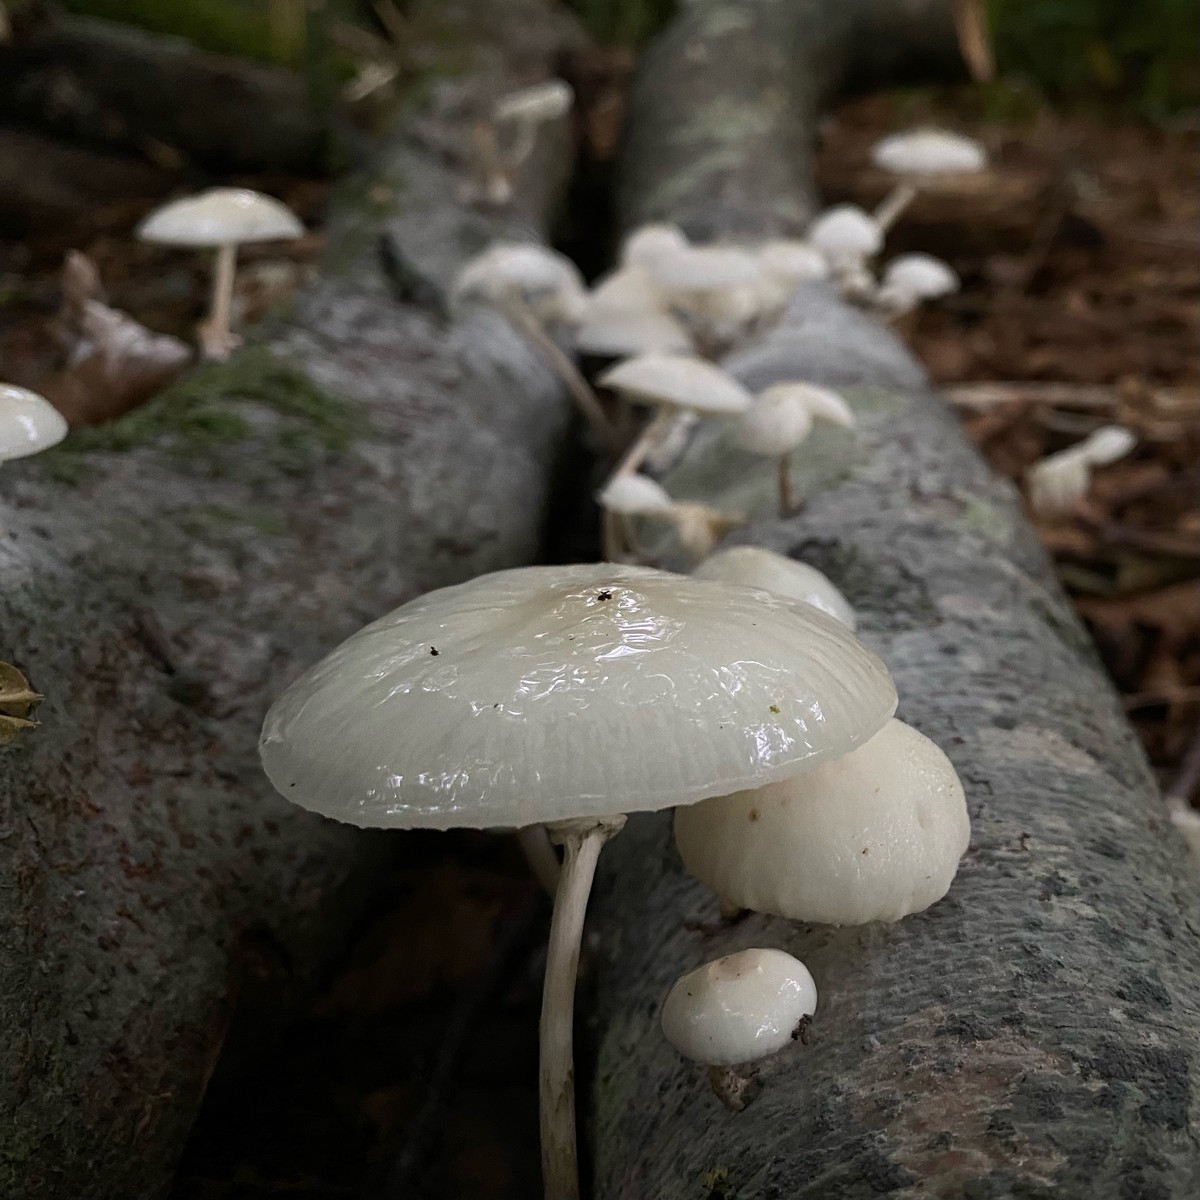 Shiny Fungi